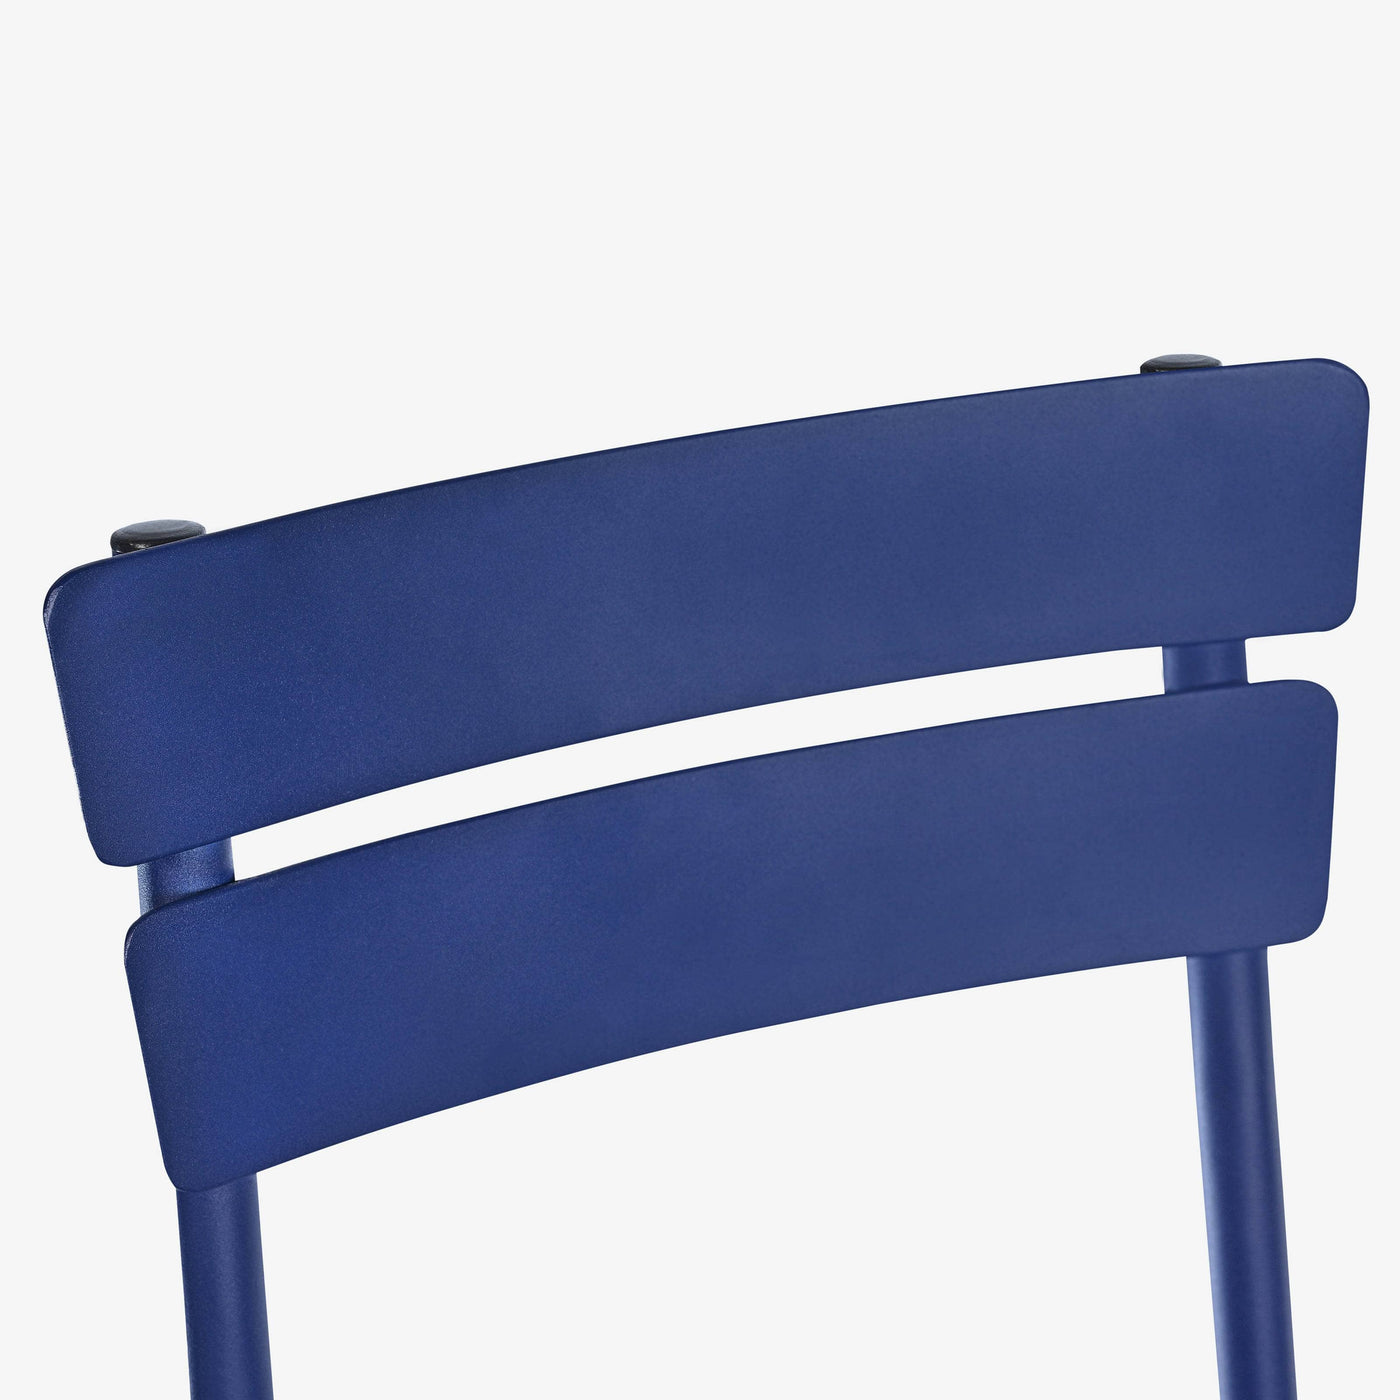 Rosta Stackable Aluminium Garden Chair, Cobalt Blue Garden Chairs sazy.com